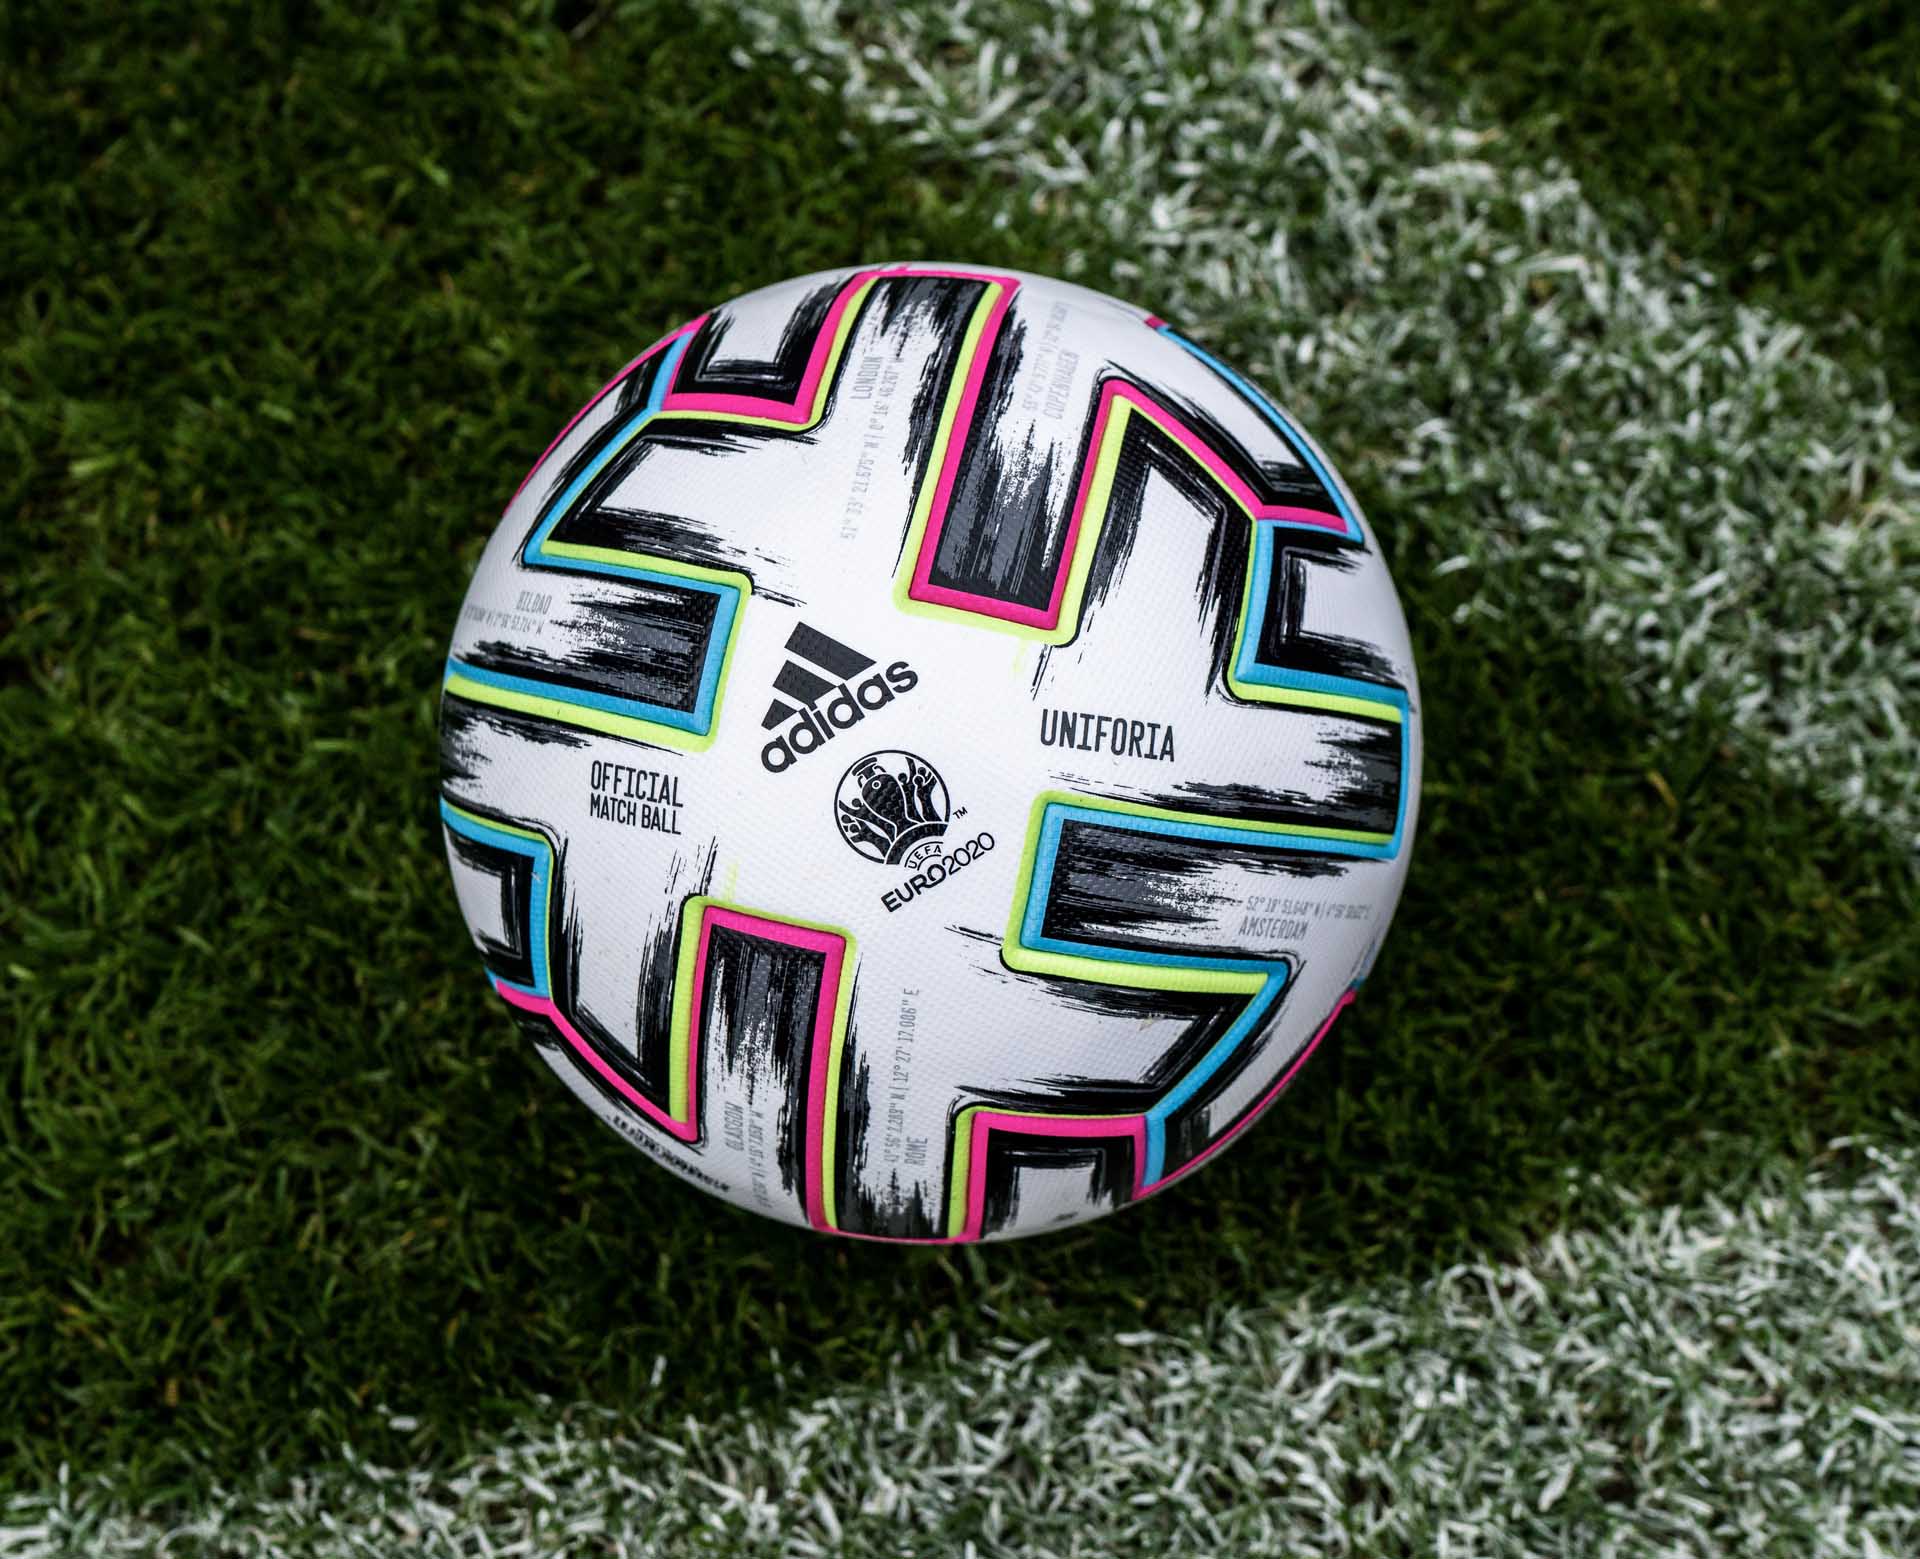 Официальный мяч ЕВРО 2020 — Adidas Uniforia!